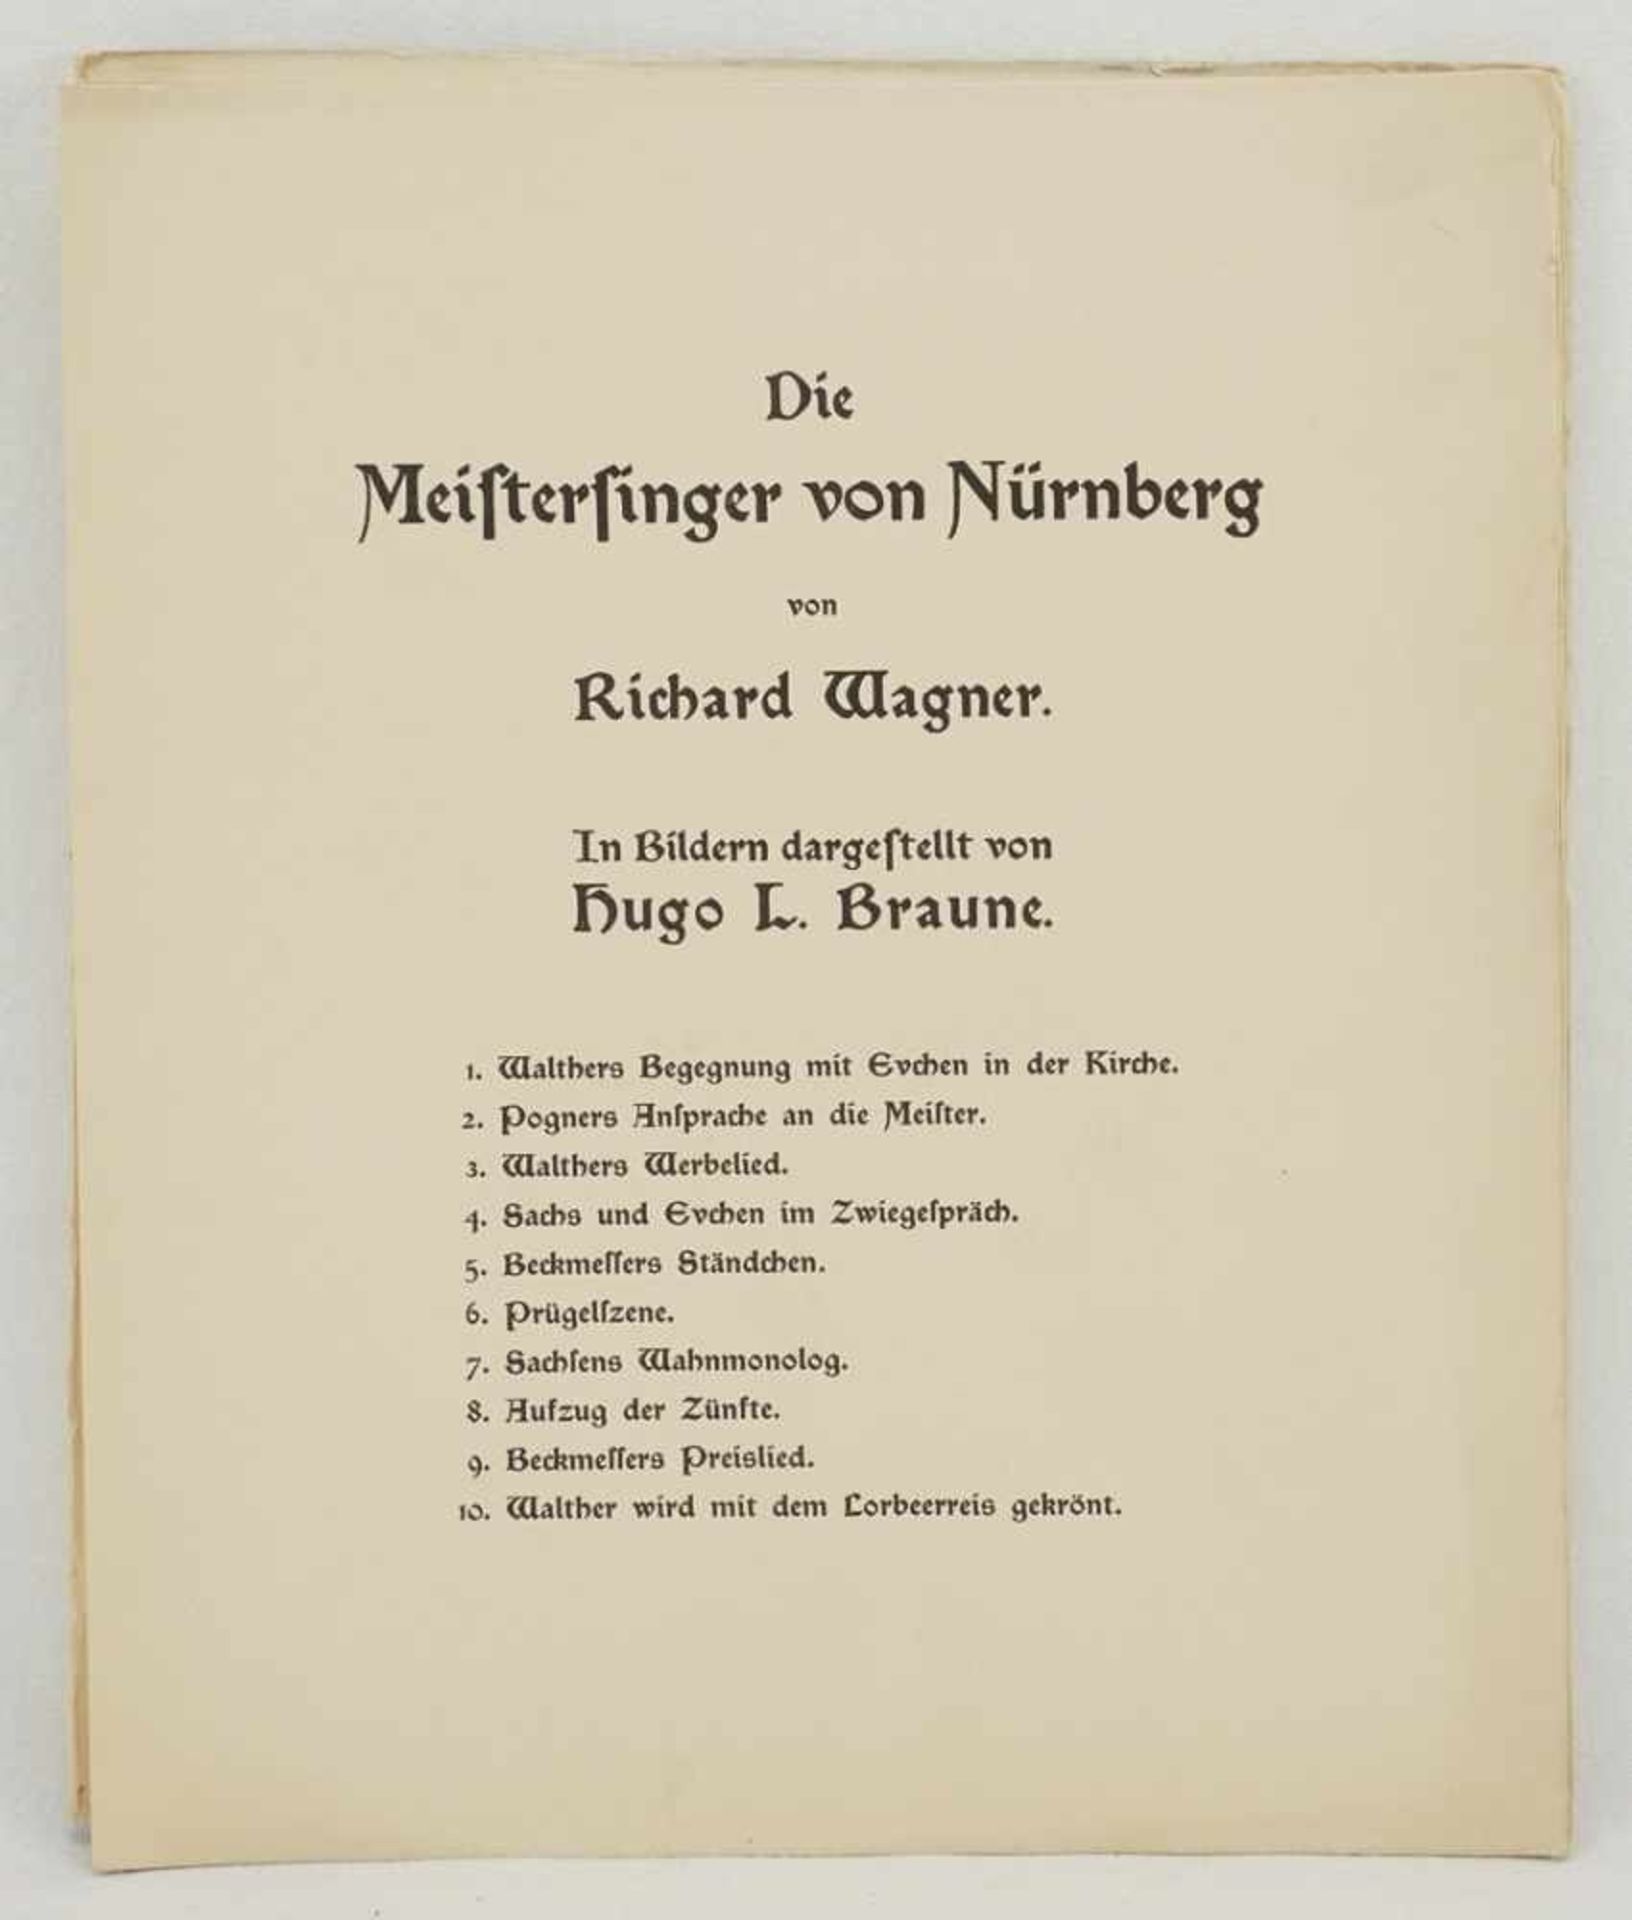 Hugo L. Braune, "Die Meistersinger von Nürnberg von Richard Wagner" - Image 2 of 4